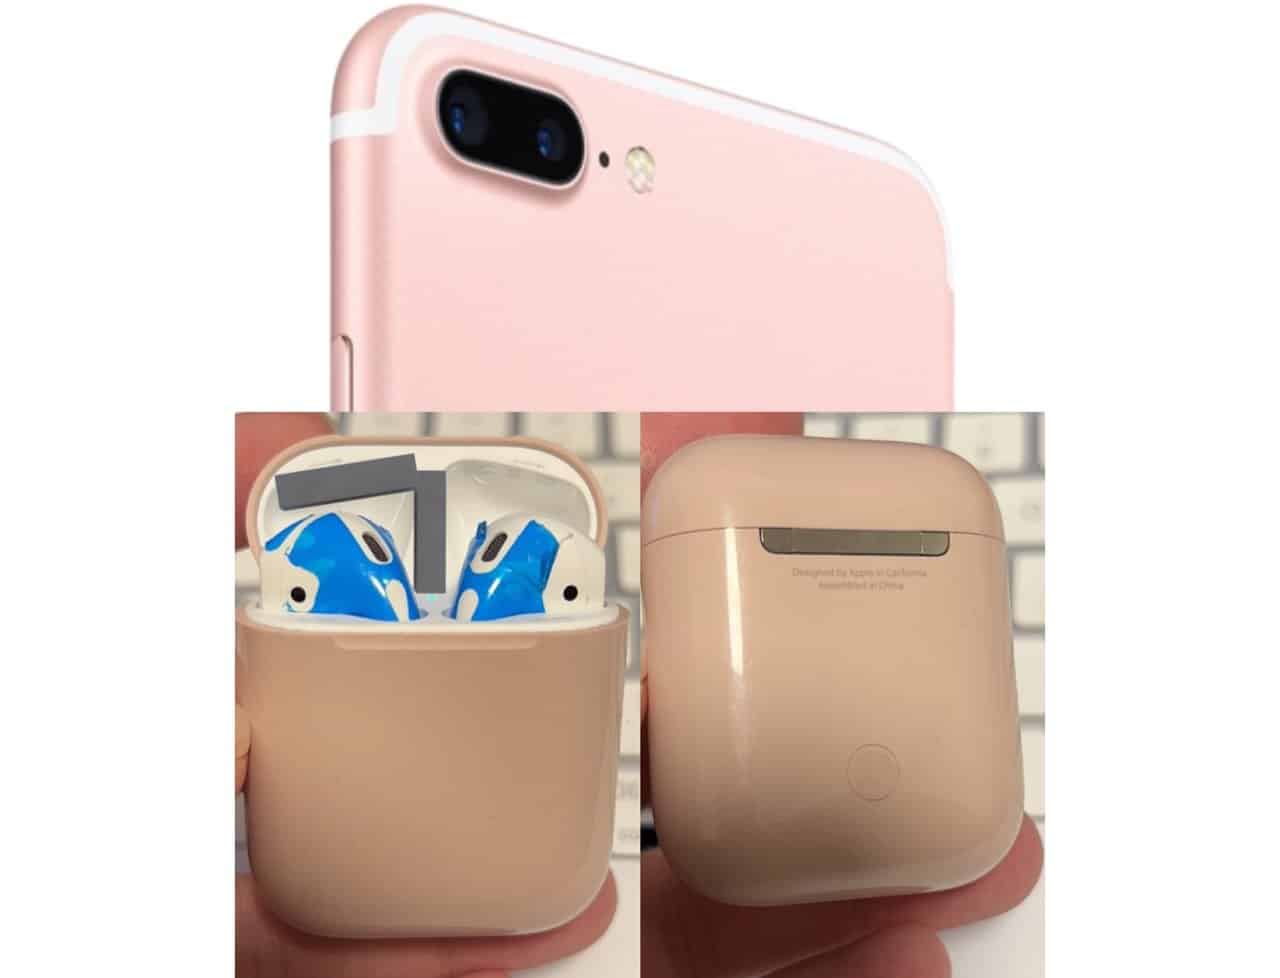 AirPods case in roze kleur passend bij iPhone 7